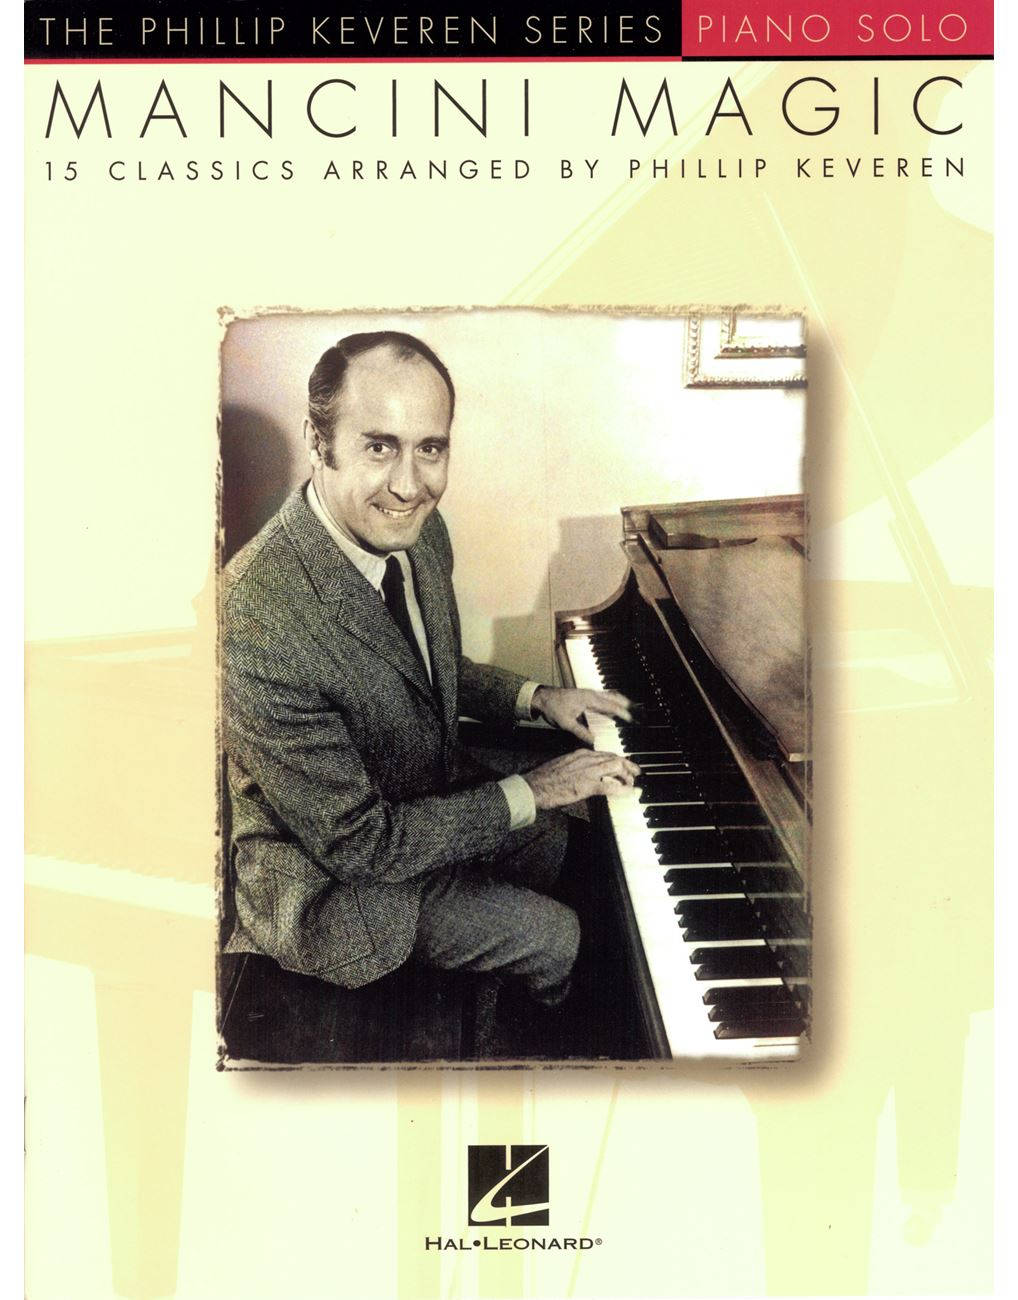 Henrymancini In Der Phillip Keveren Serie Solo Für Klavier 2011 Wallpaper